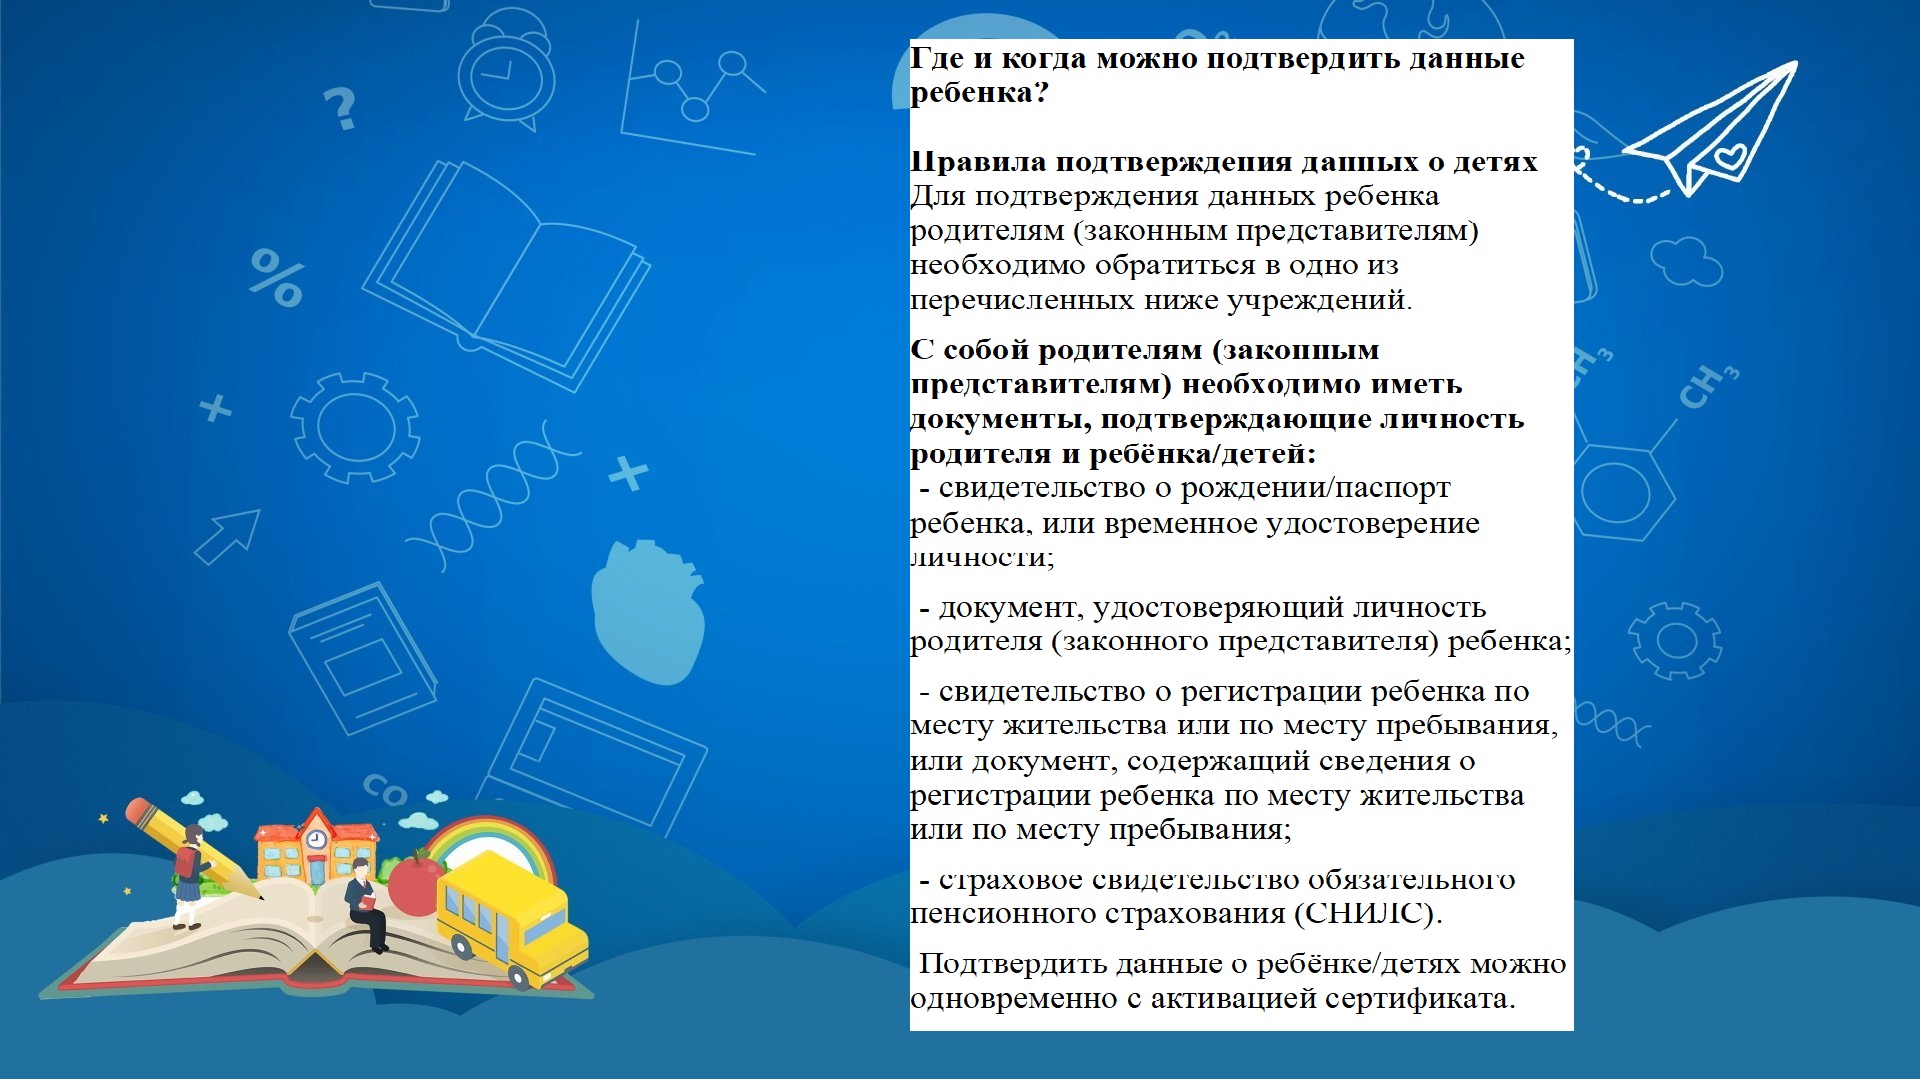 http://edu.mari.ru/mouo-yoshkarola/dou65/DocLib25/картинки/навигатор%20допобразования/Подтверждение%20сертификата.jpg